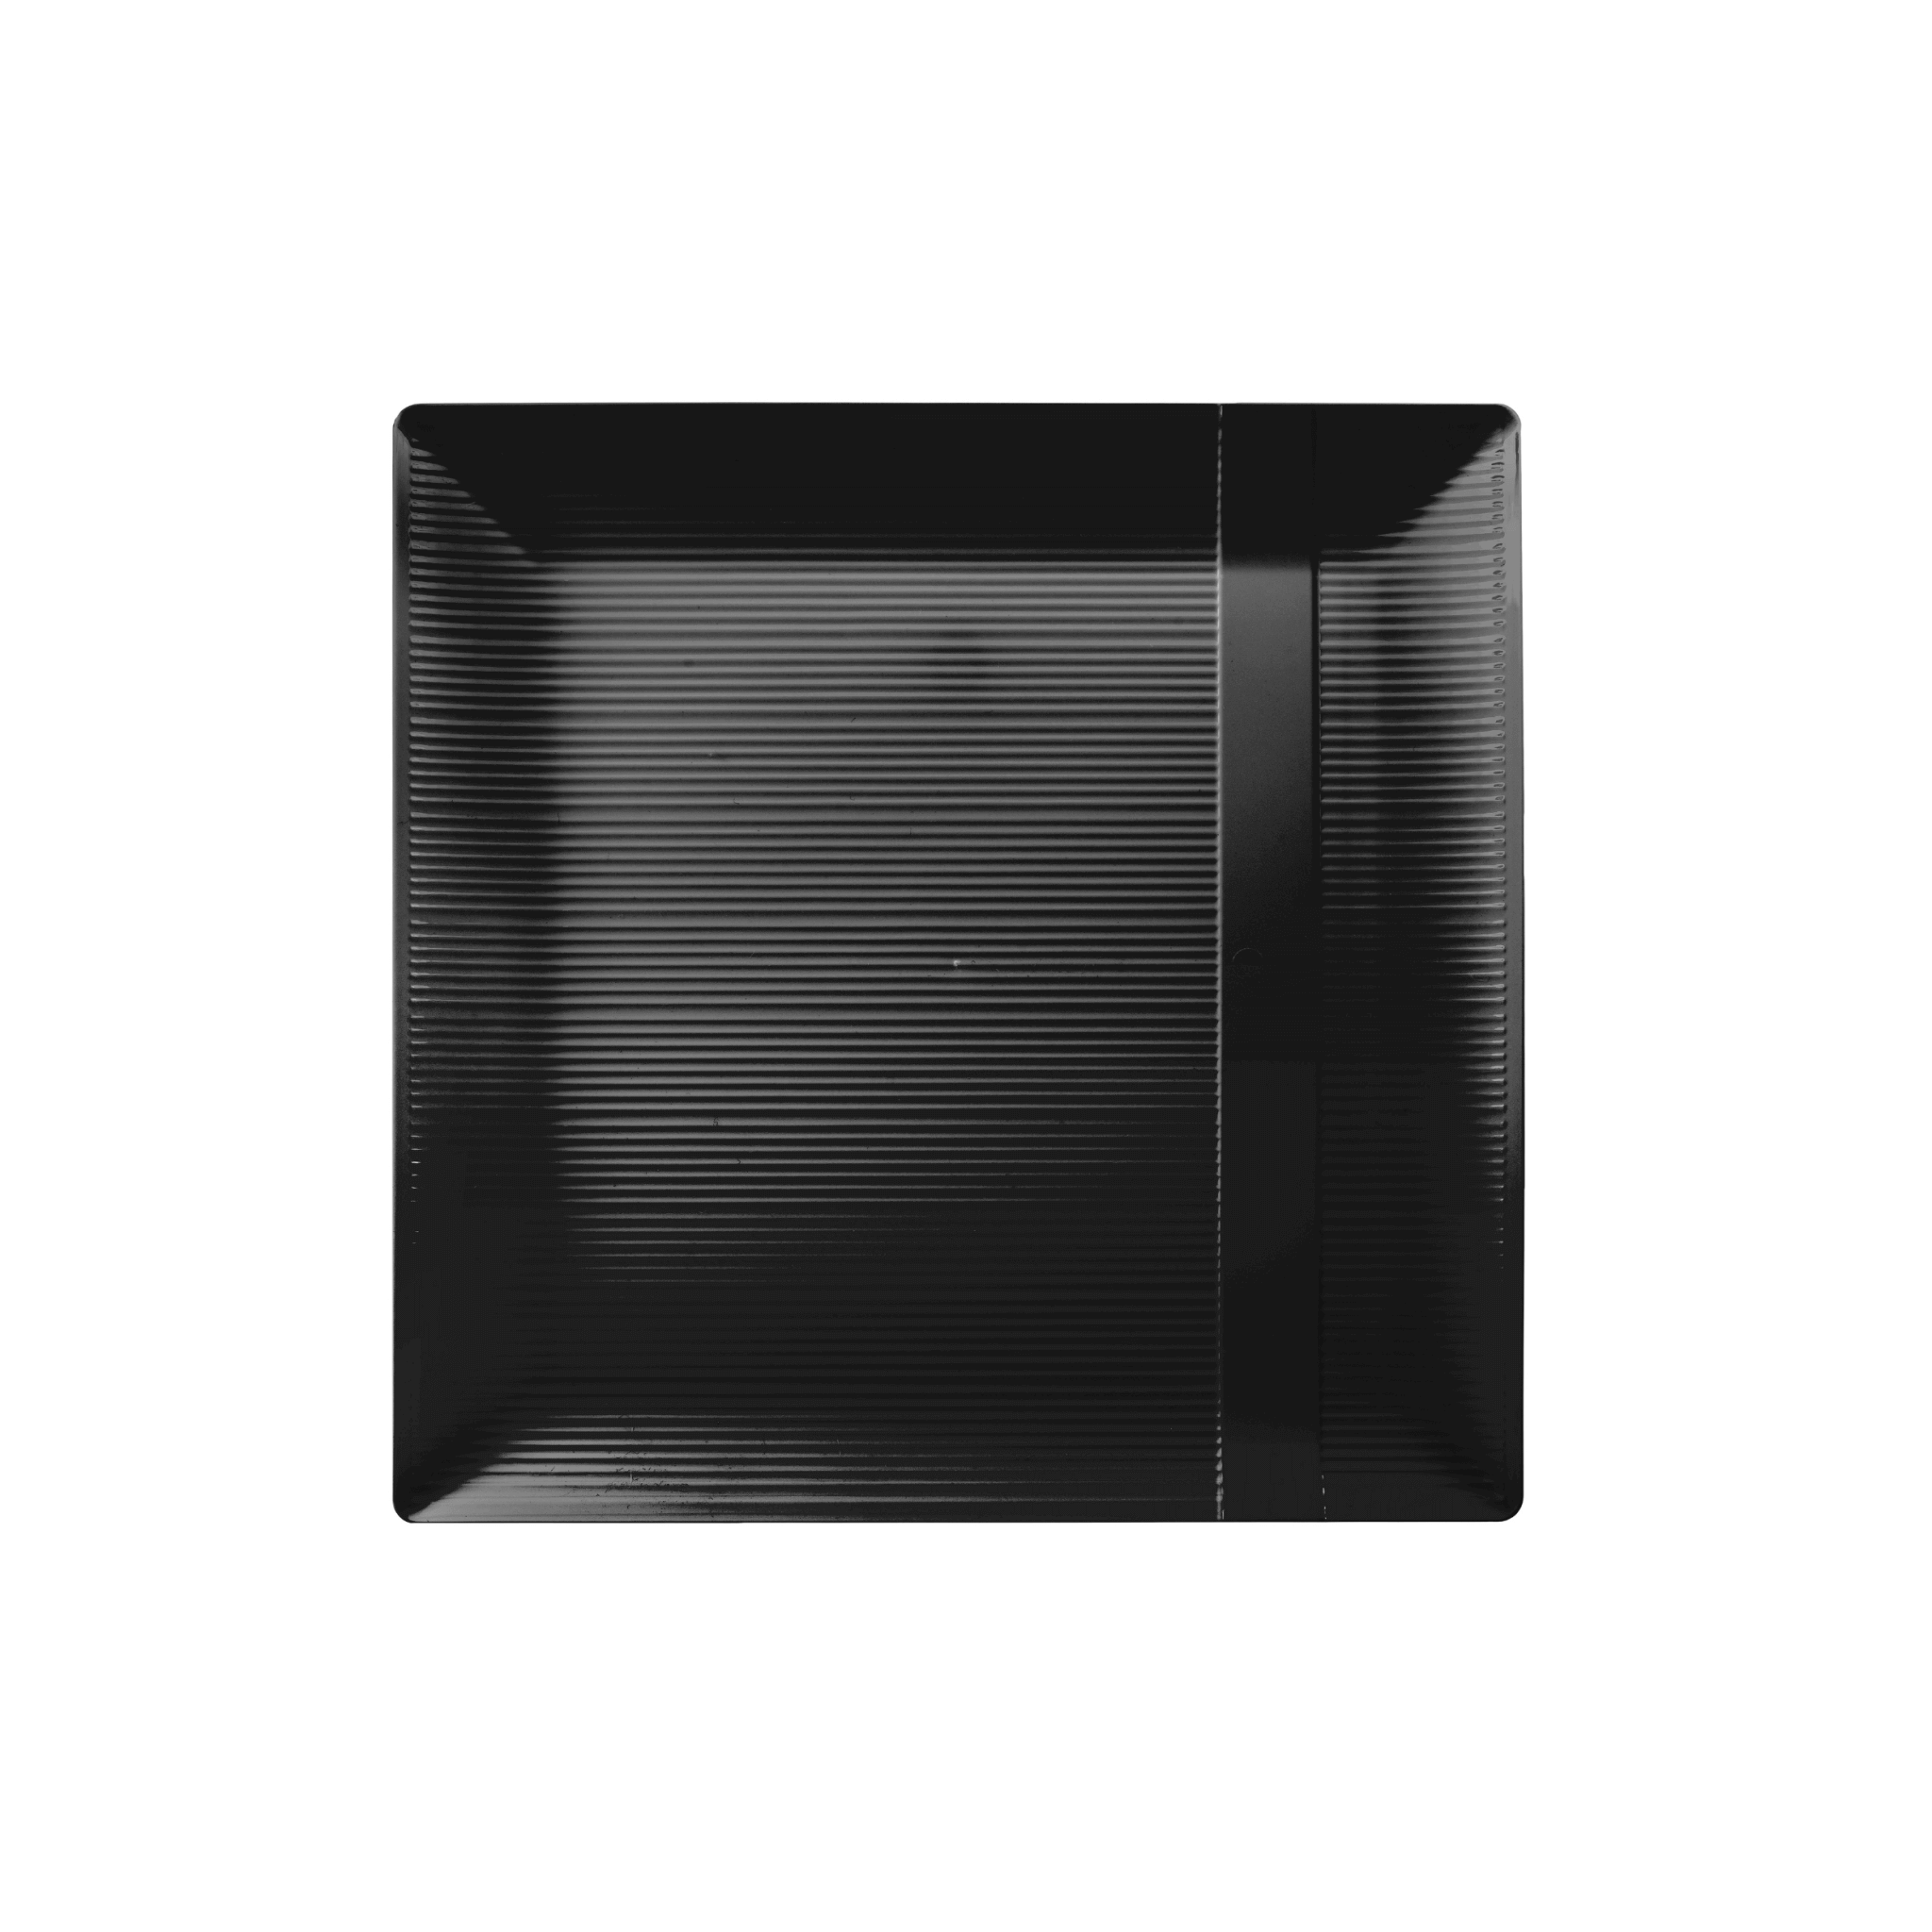 7.5" Zen Ridged Black Square Plastic Plates (120 Count) - Yom Tov Settings